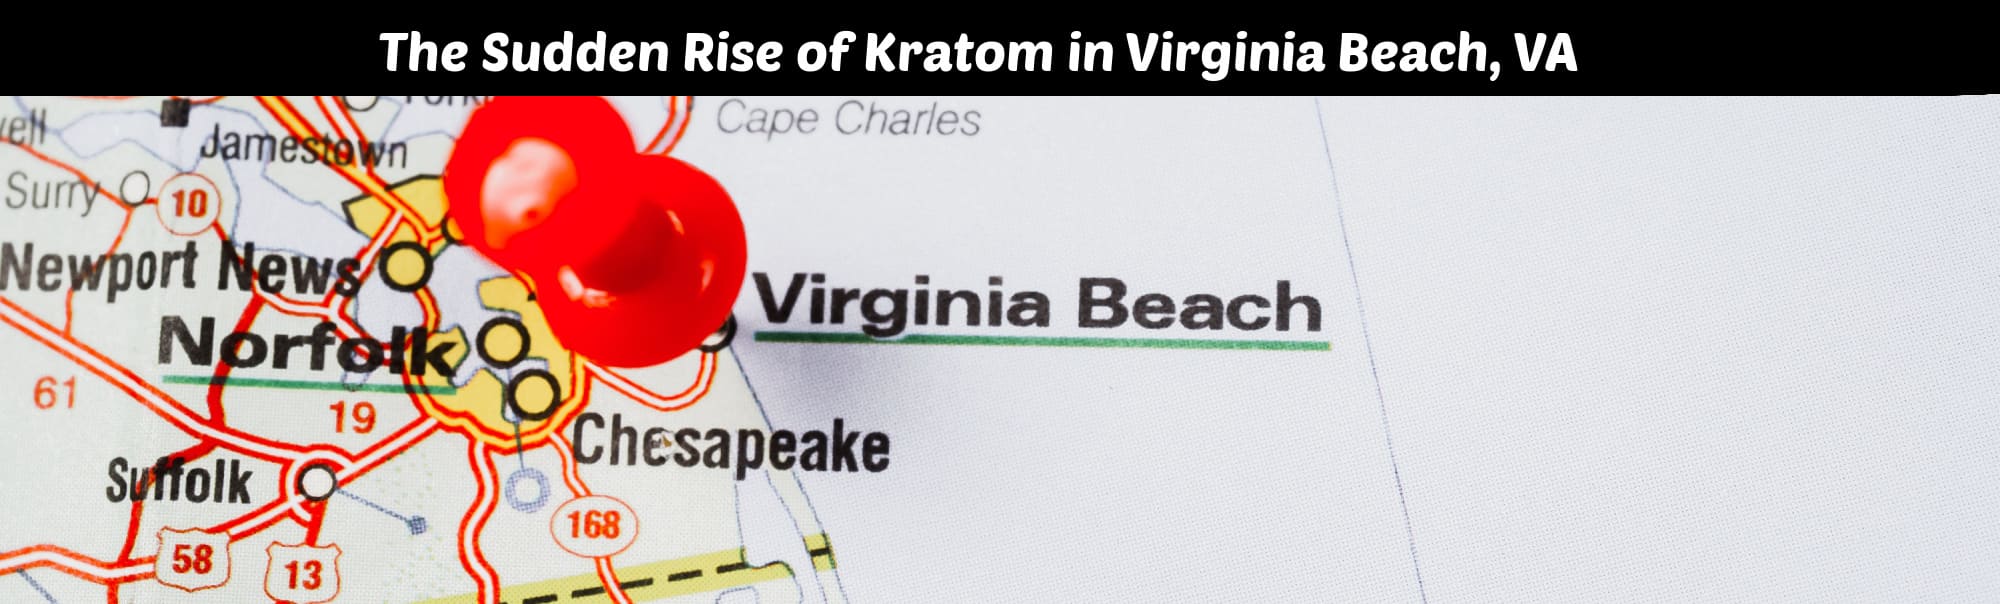 Where to Buy the Best Kratom in Virginia Beach, Virginia